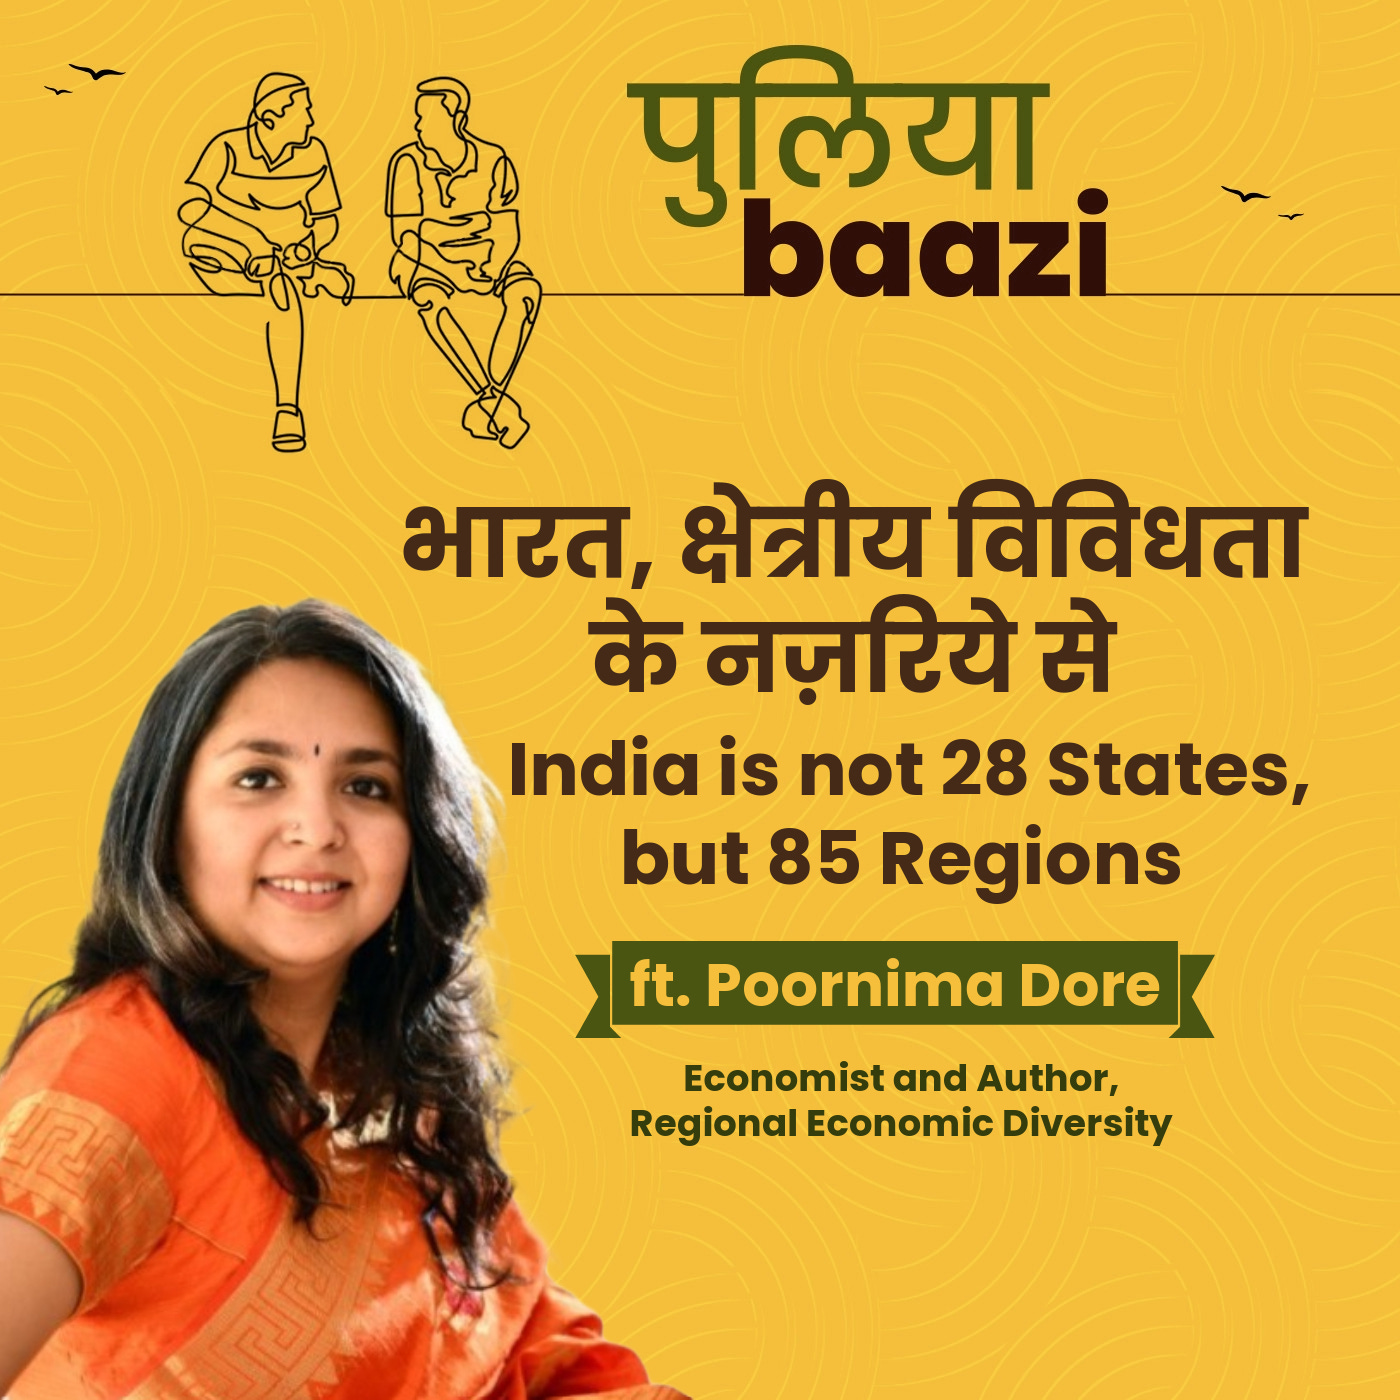 भारत, क्षेत्रीय विविधता के नज़रिये से। India is not 28 States, but 85 Regions ft. Poornima Dore